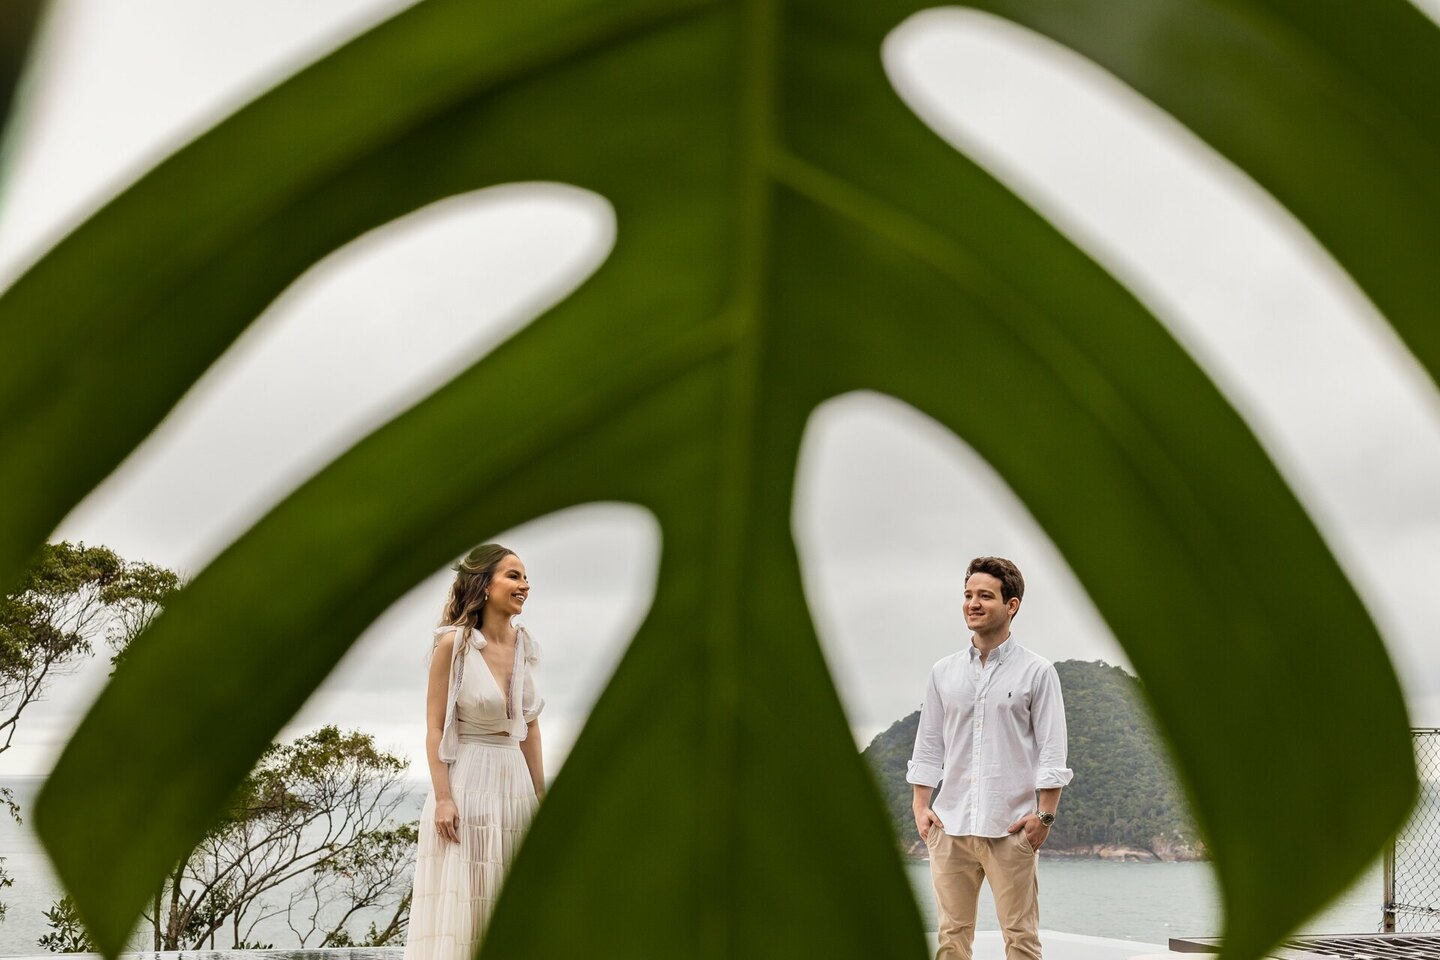 Ensaio pré-wedding na praia - Vitória e João Vitor